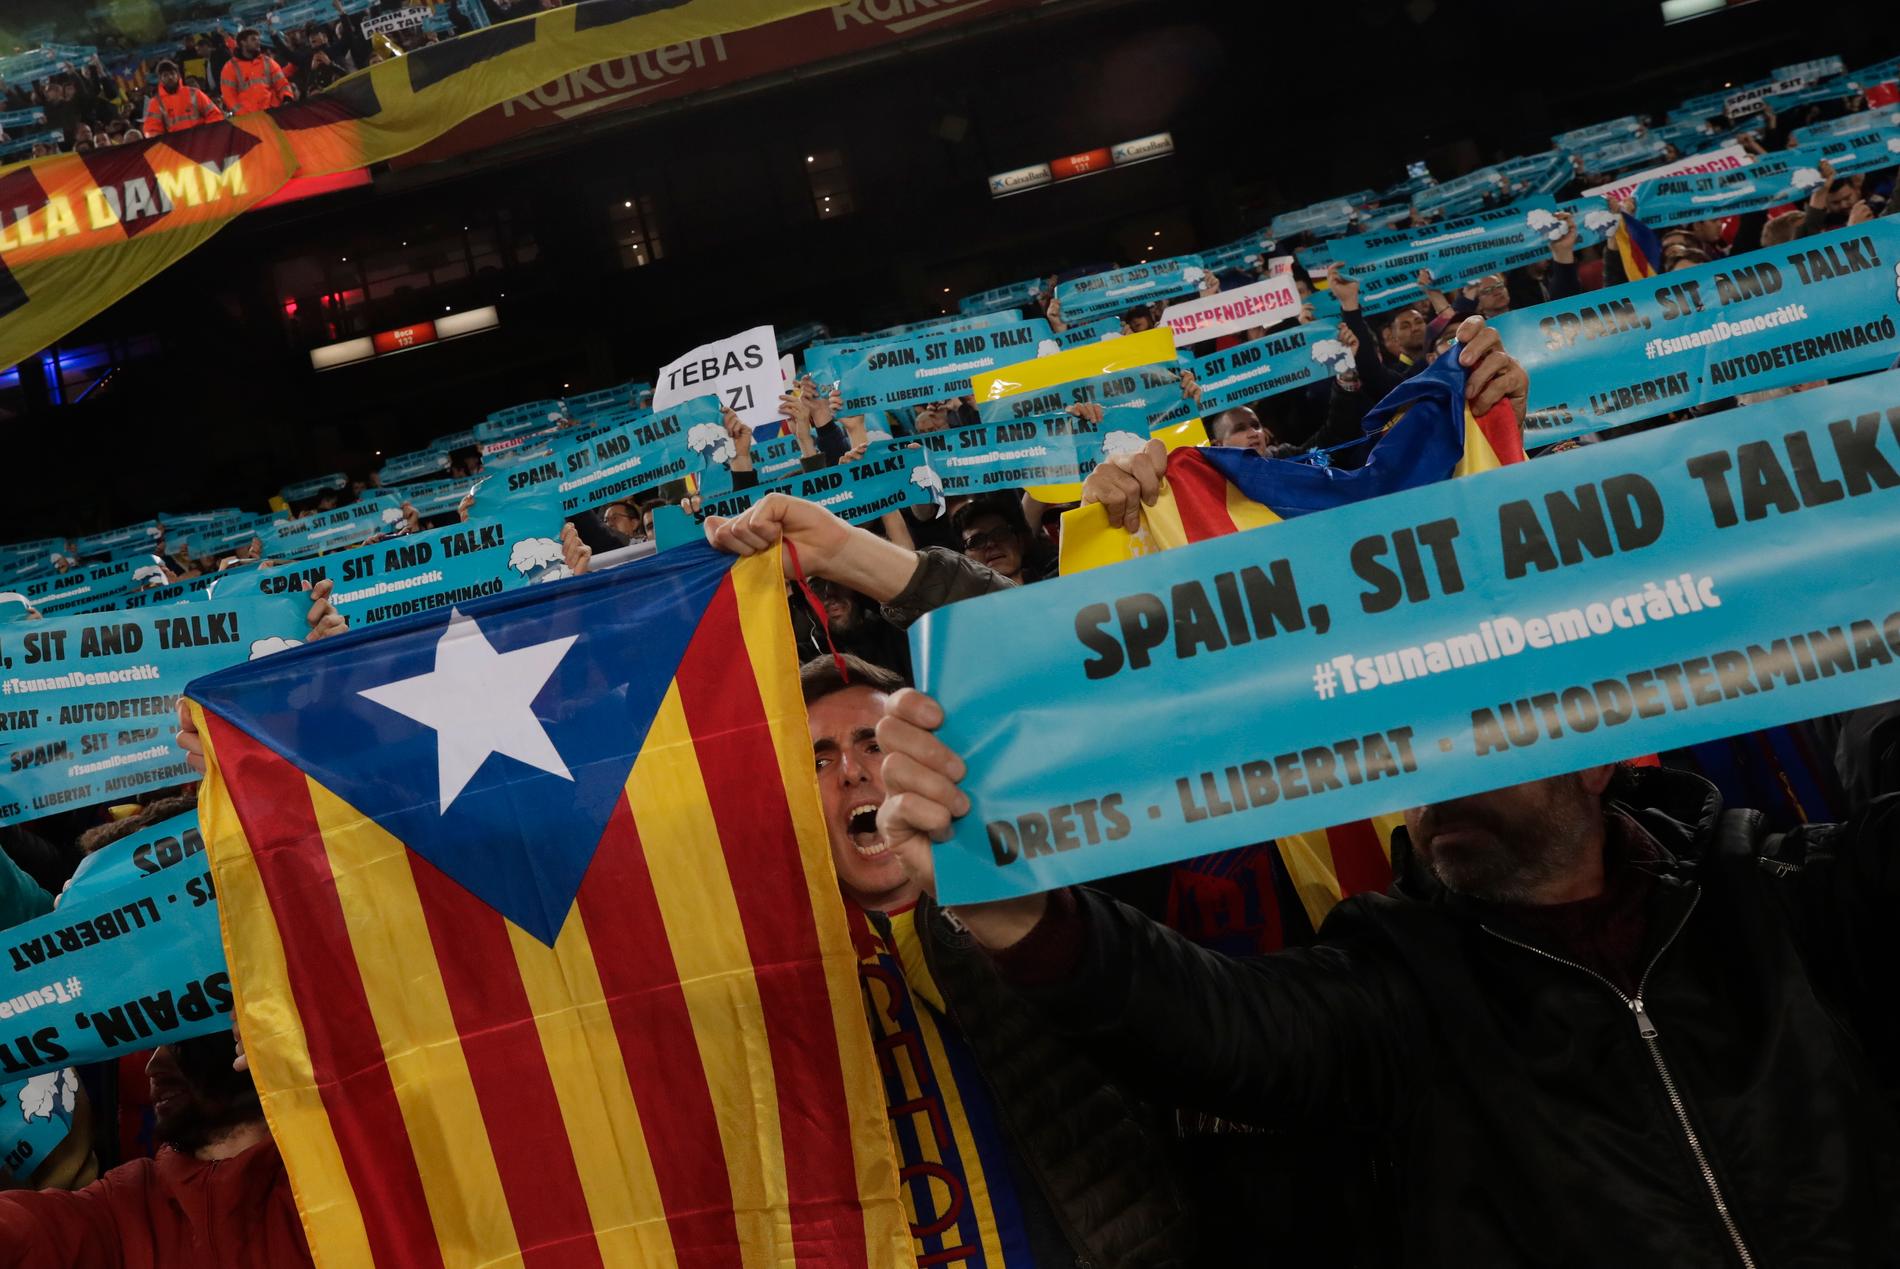 Barcelonas fans höll upp den katalanska flaggan och plakat med texten "Spain, sit and talk" under stormatchen Barcelona–Real Madrid.